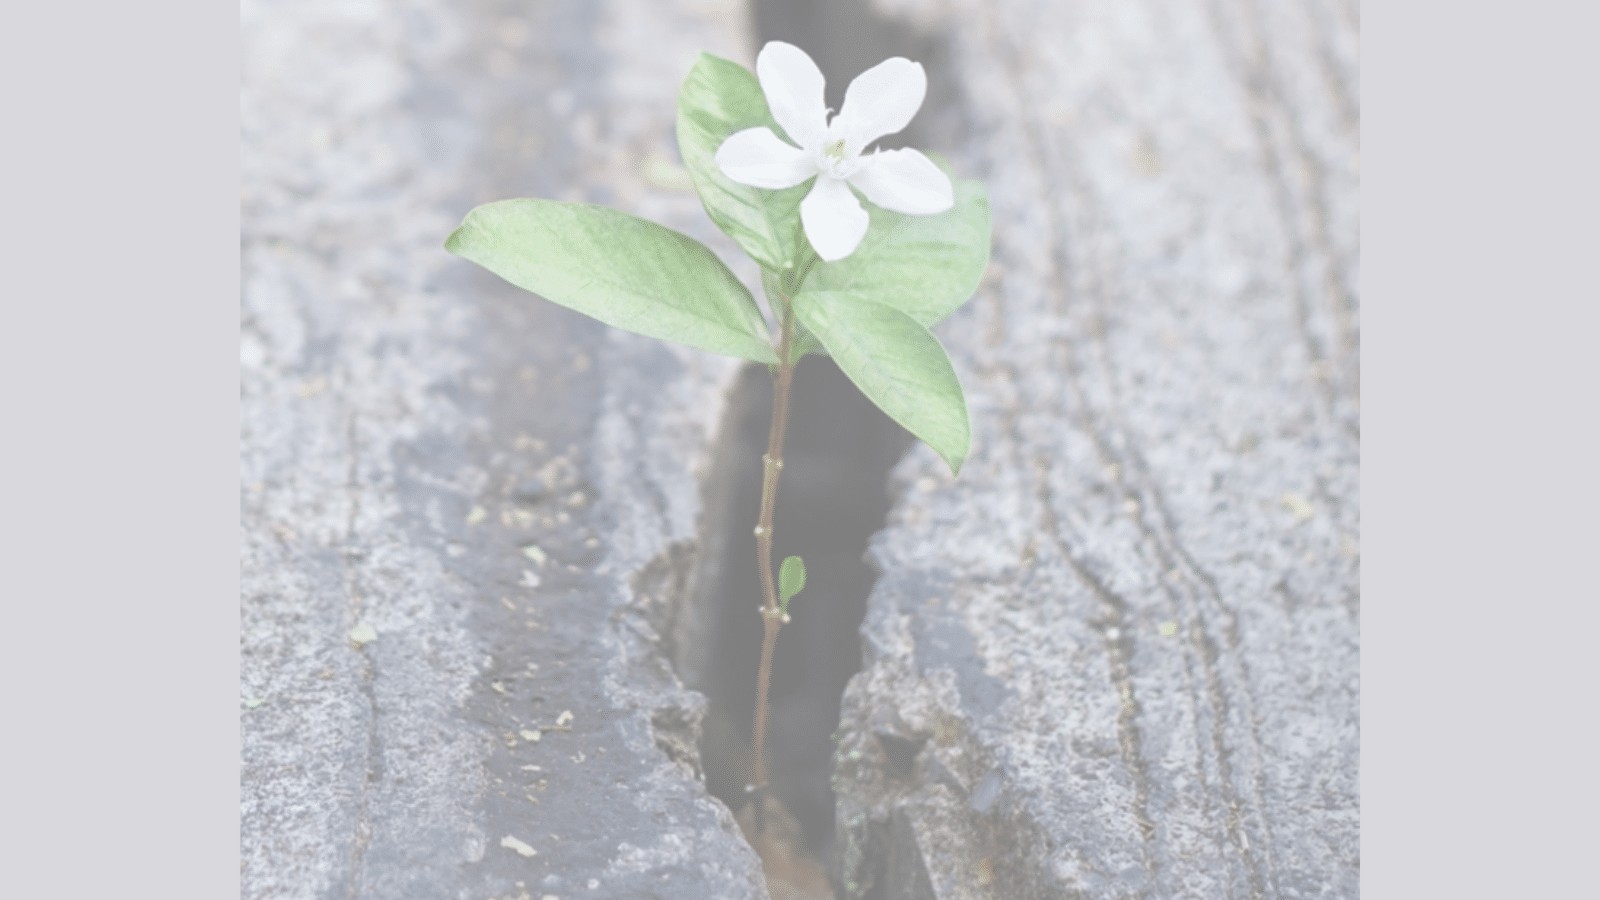 Flower growing in crack